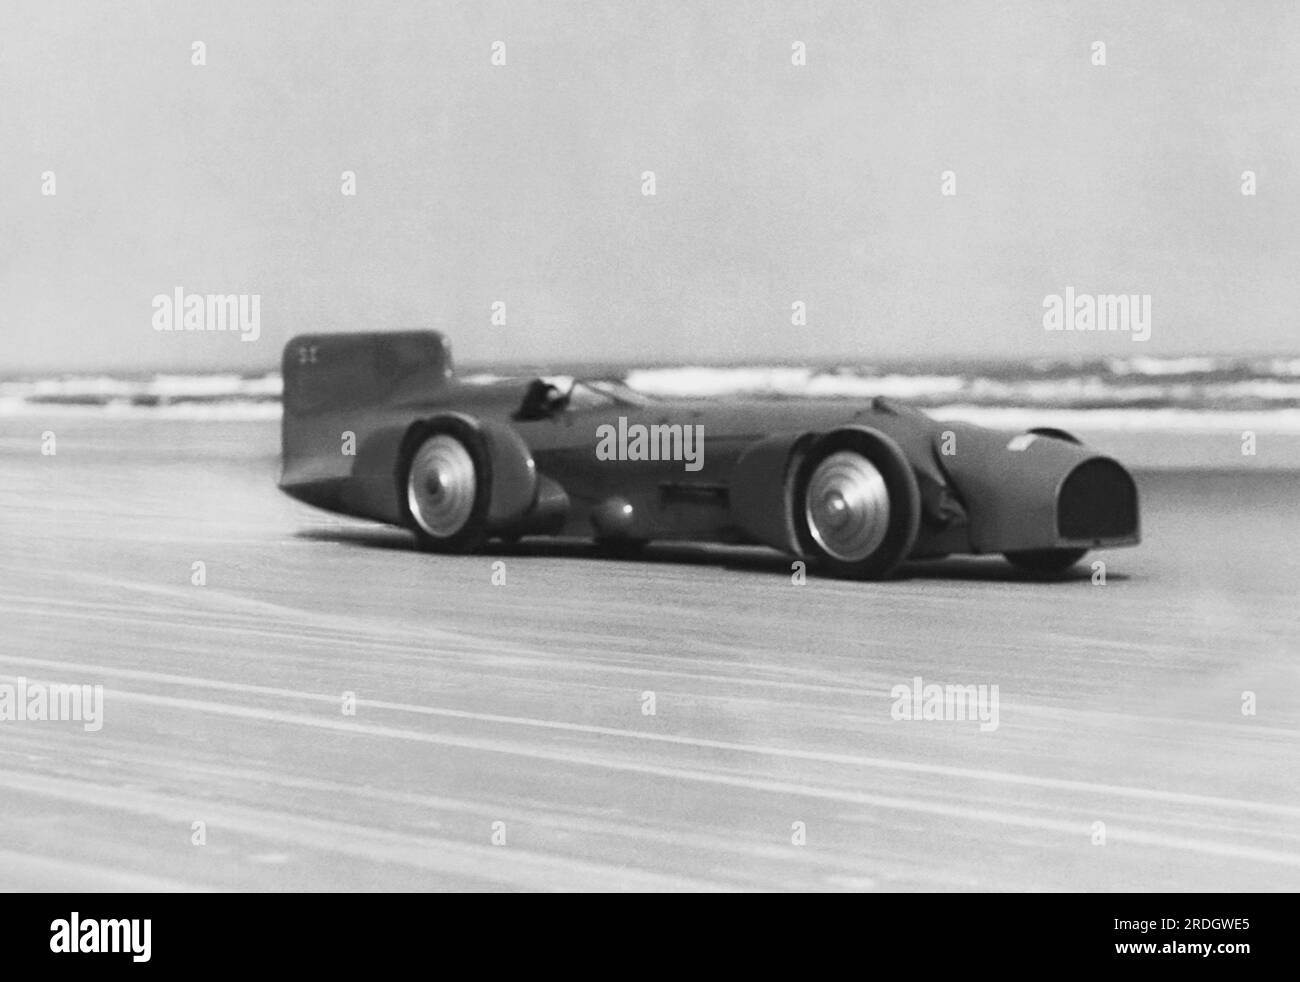 Daytona Beach, Florida: Februar 1931 britischer Rennfahrer Captain Malcolm Campbell in seinem Bluebird Rennwagen setzt einen neuen automatischen Geschwindigkeitsrekord von 245 km/h, um den alten Geschwindigkeitsrekord von 231 km/h von Major Seagrave zu brechen. Stockfoto